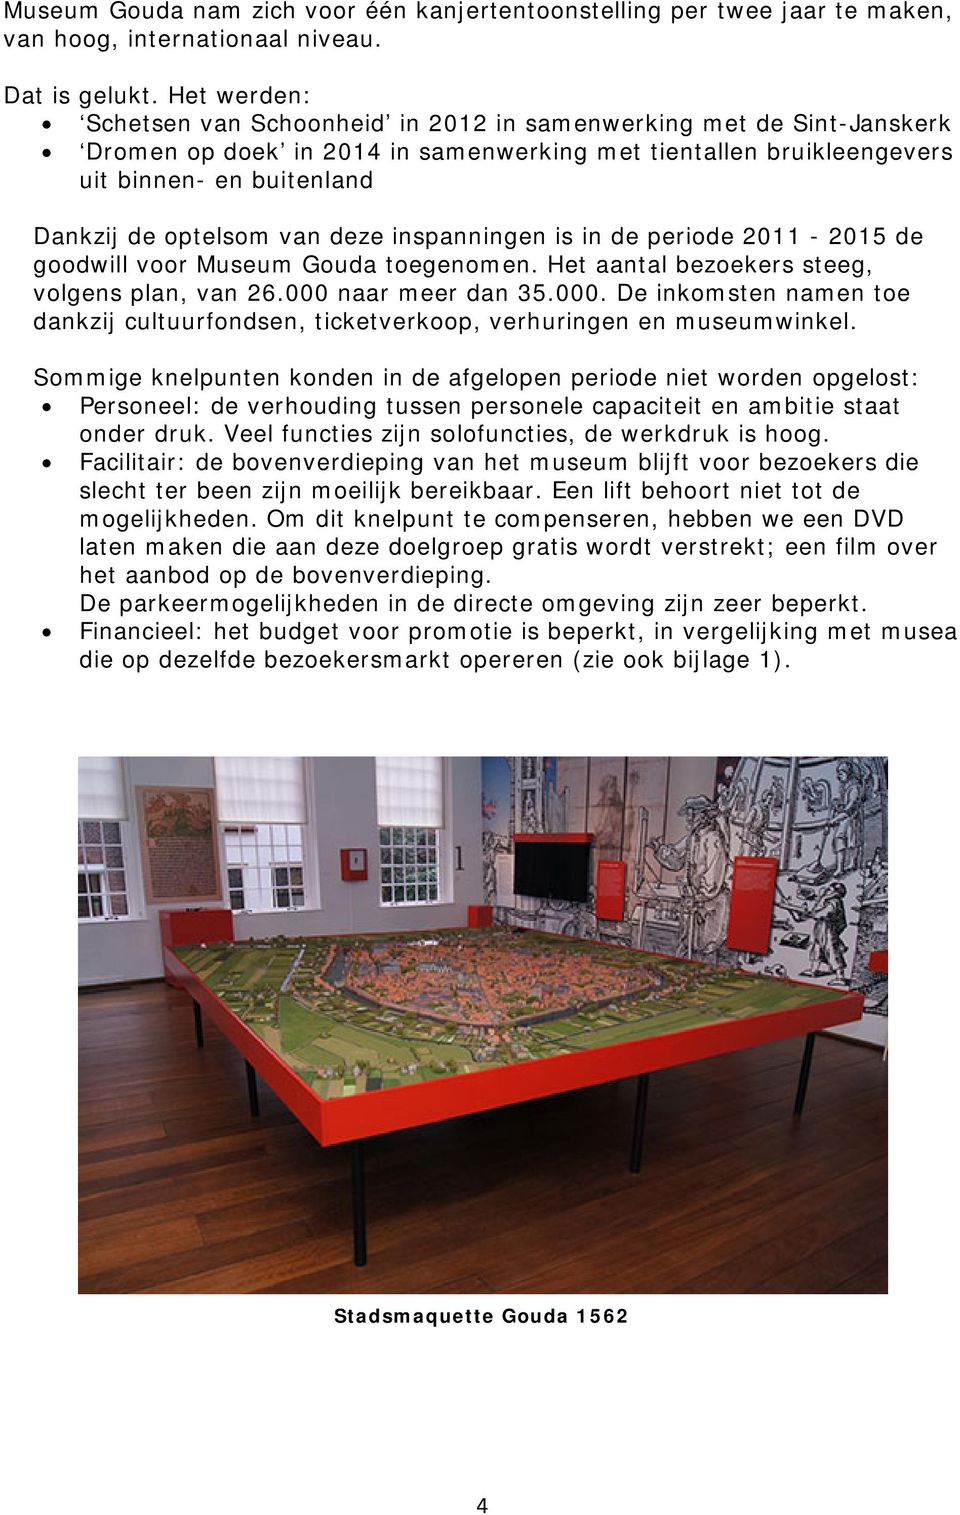 van deze inspanningen is in de periode 2011-2015 de goodwill voor Museum Gouda toegenomen. Het aantal bezoekers steeg, volgens plan, van 26.000 